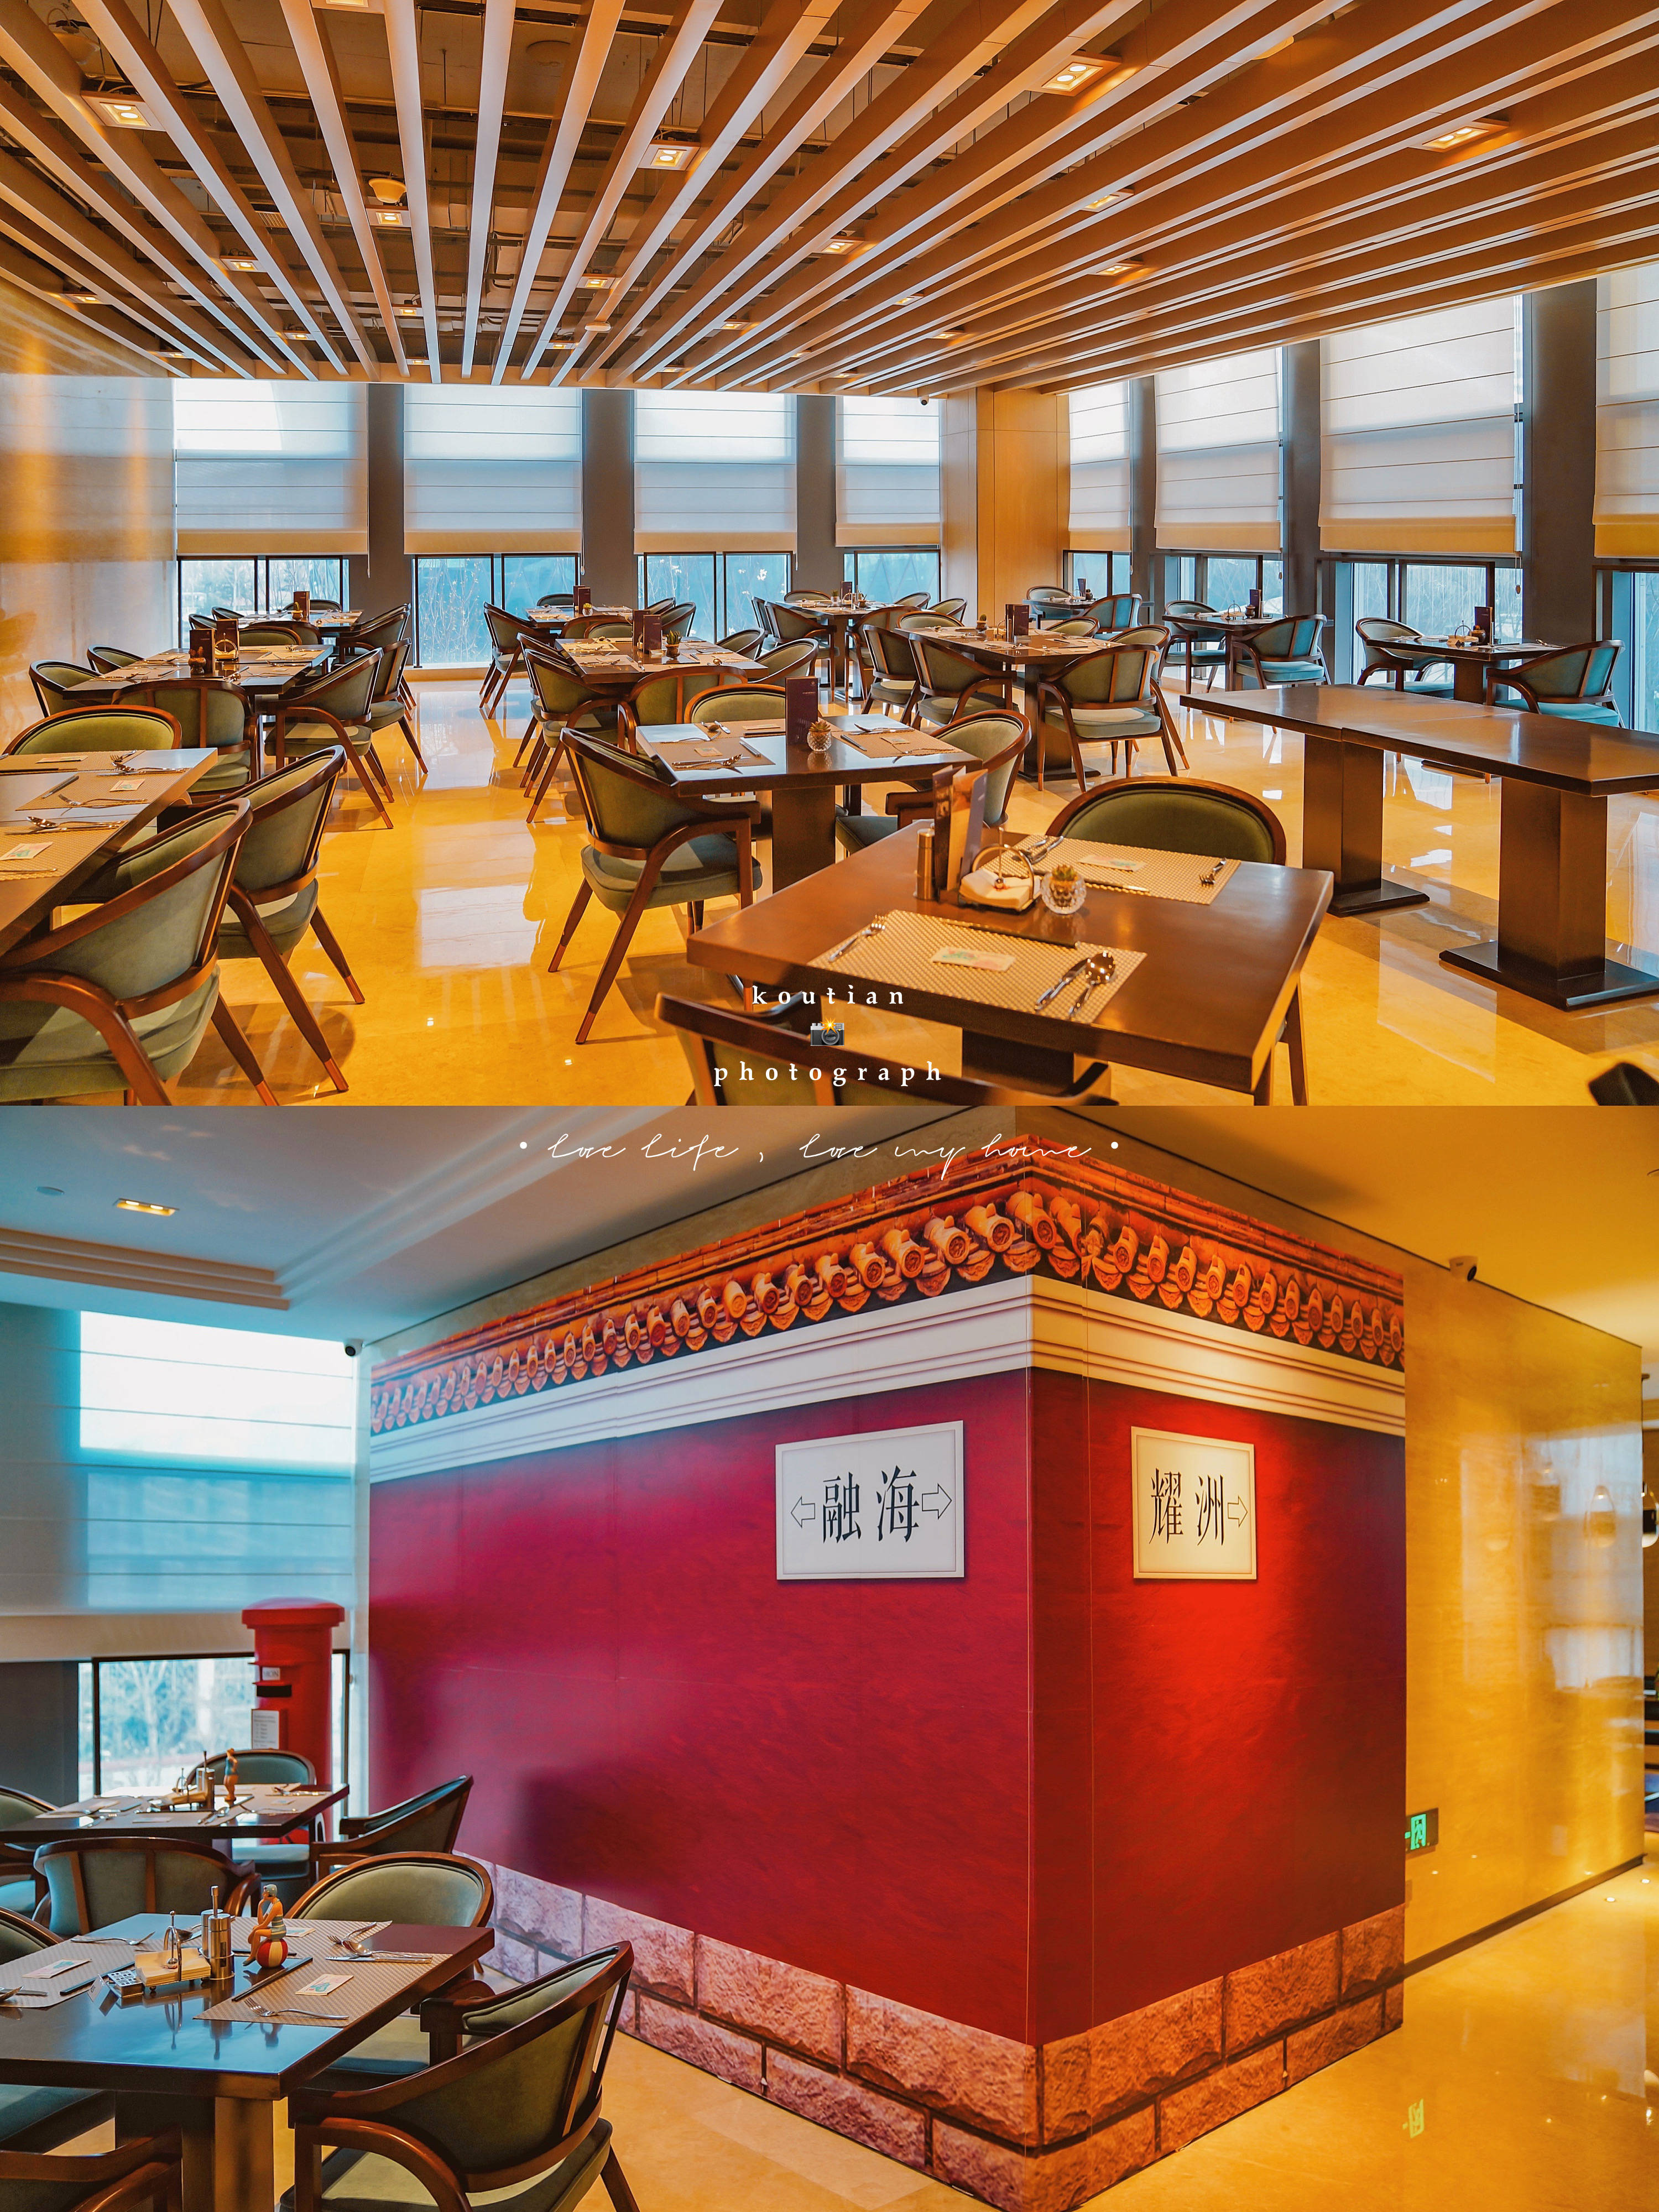 融汇世界 耀目之选,青岛融海耀洲酒店四季自助餐厅首次亮相